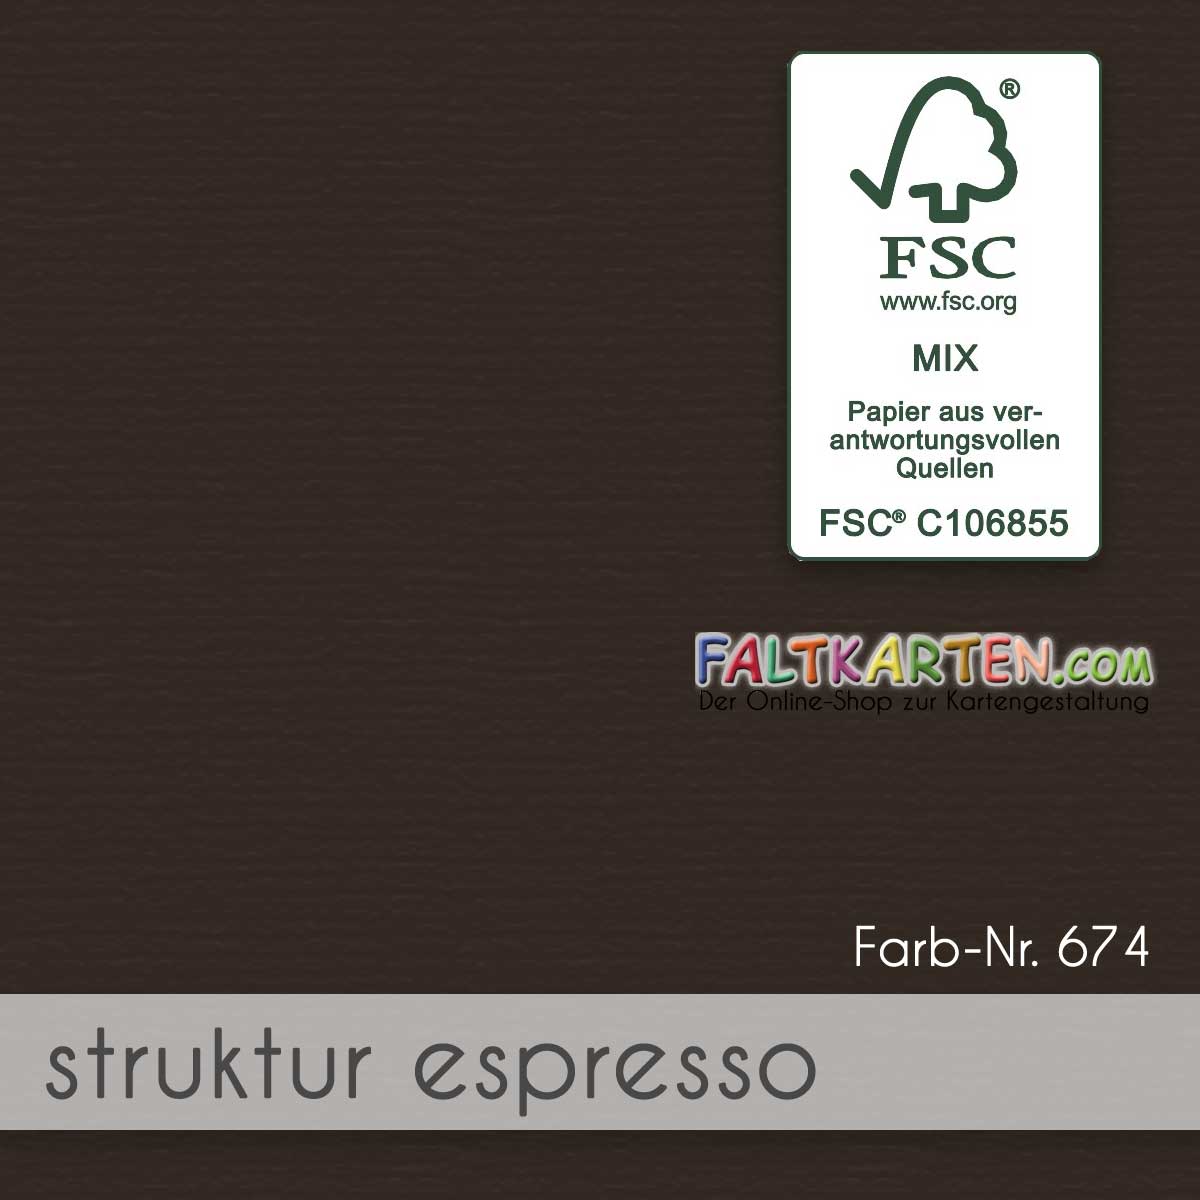 Farbton: struktur espresso